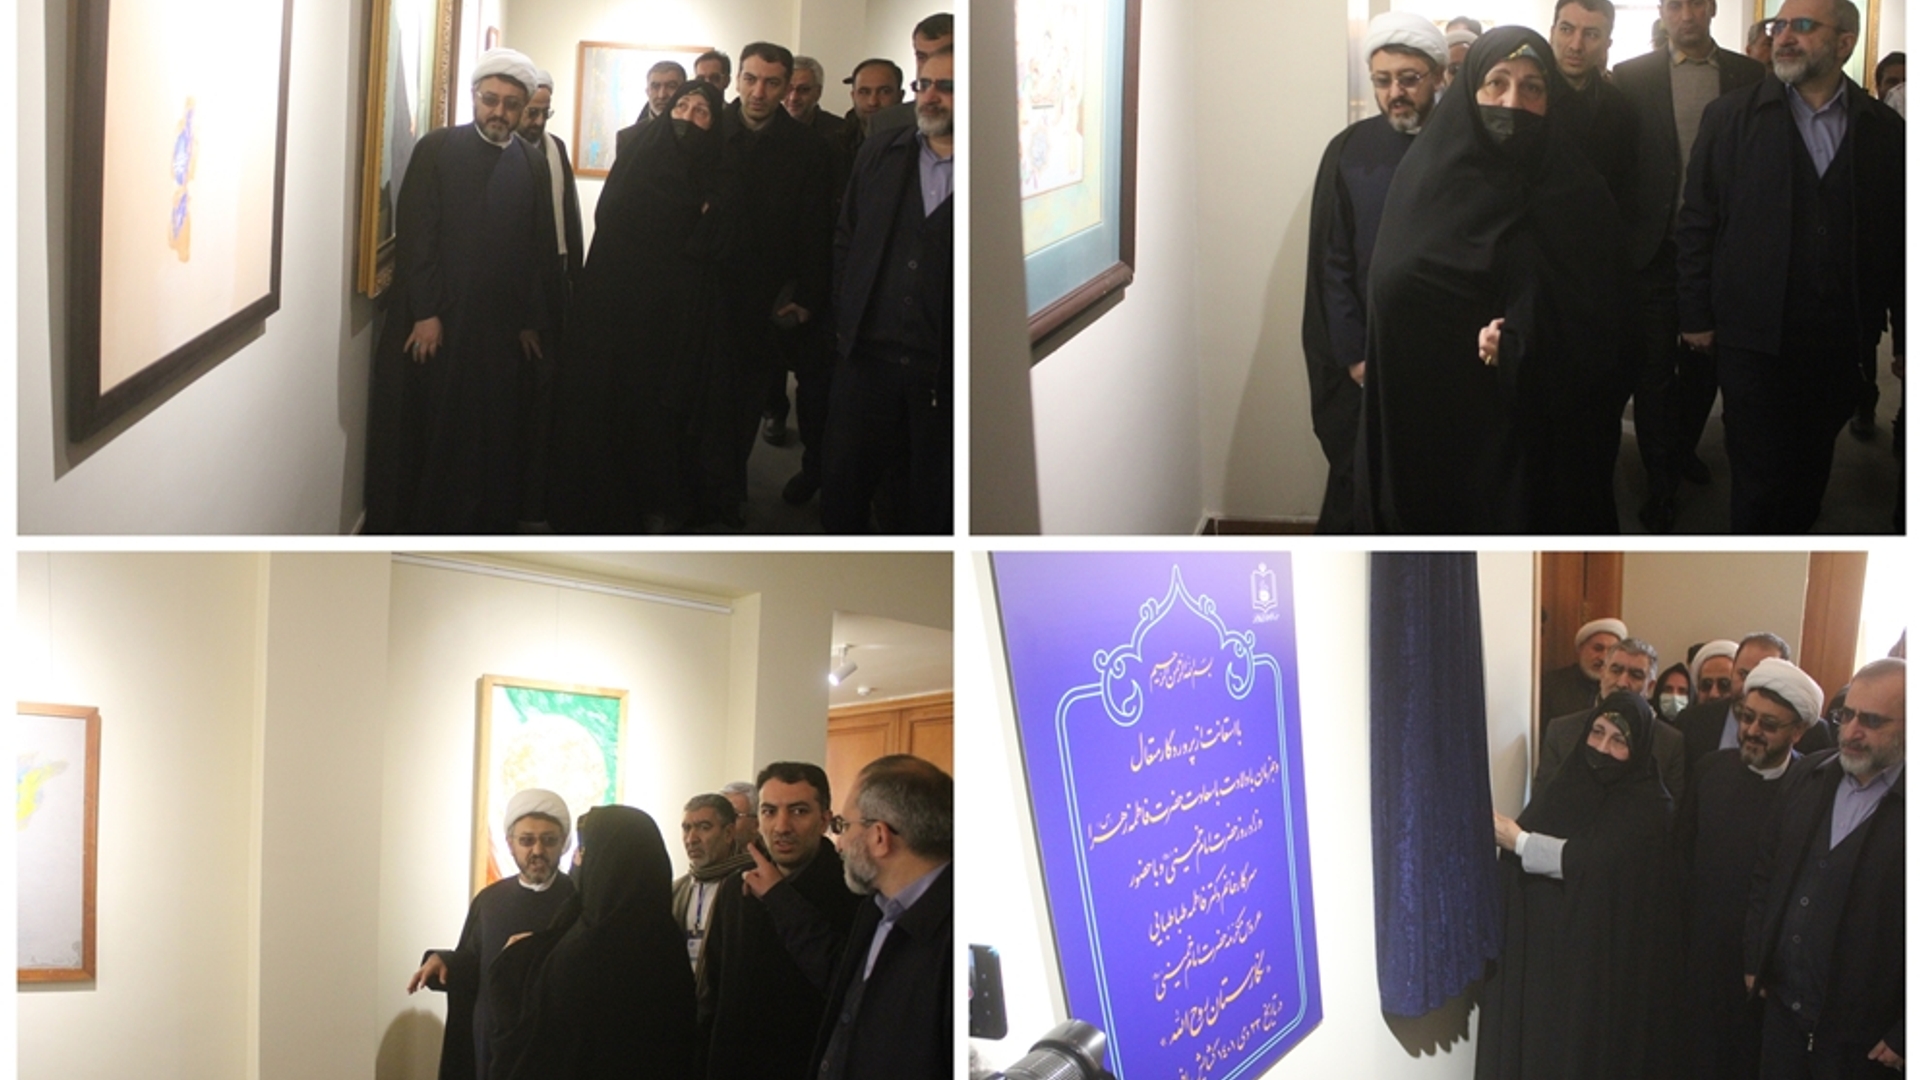 نمایشگاه "نگارستان روح اله" در بیت قدیمی حضرت امام (ره) افتتاح شد